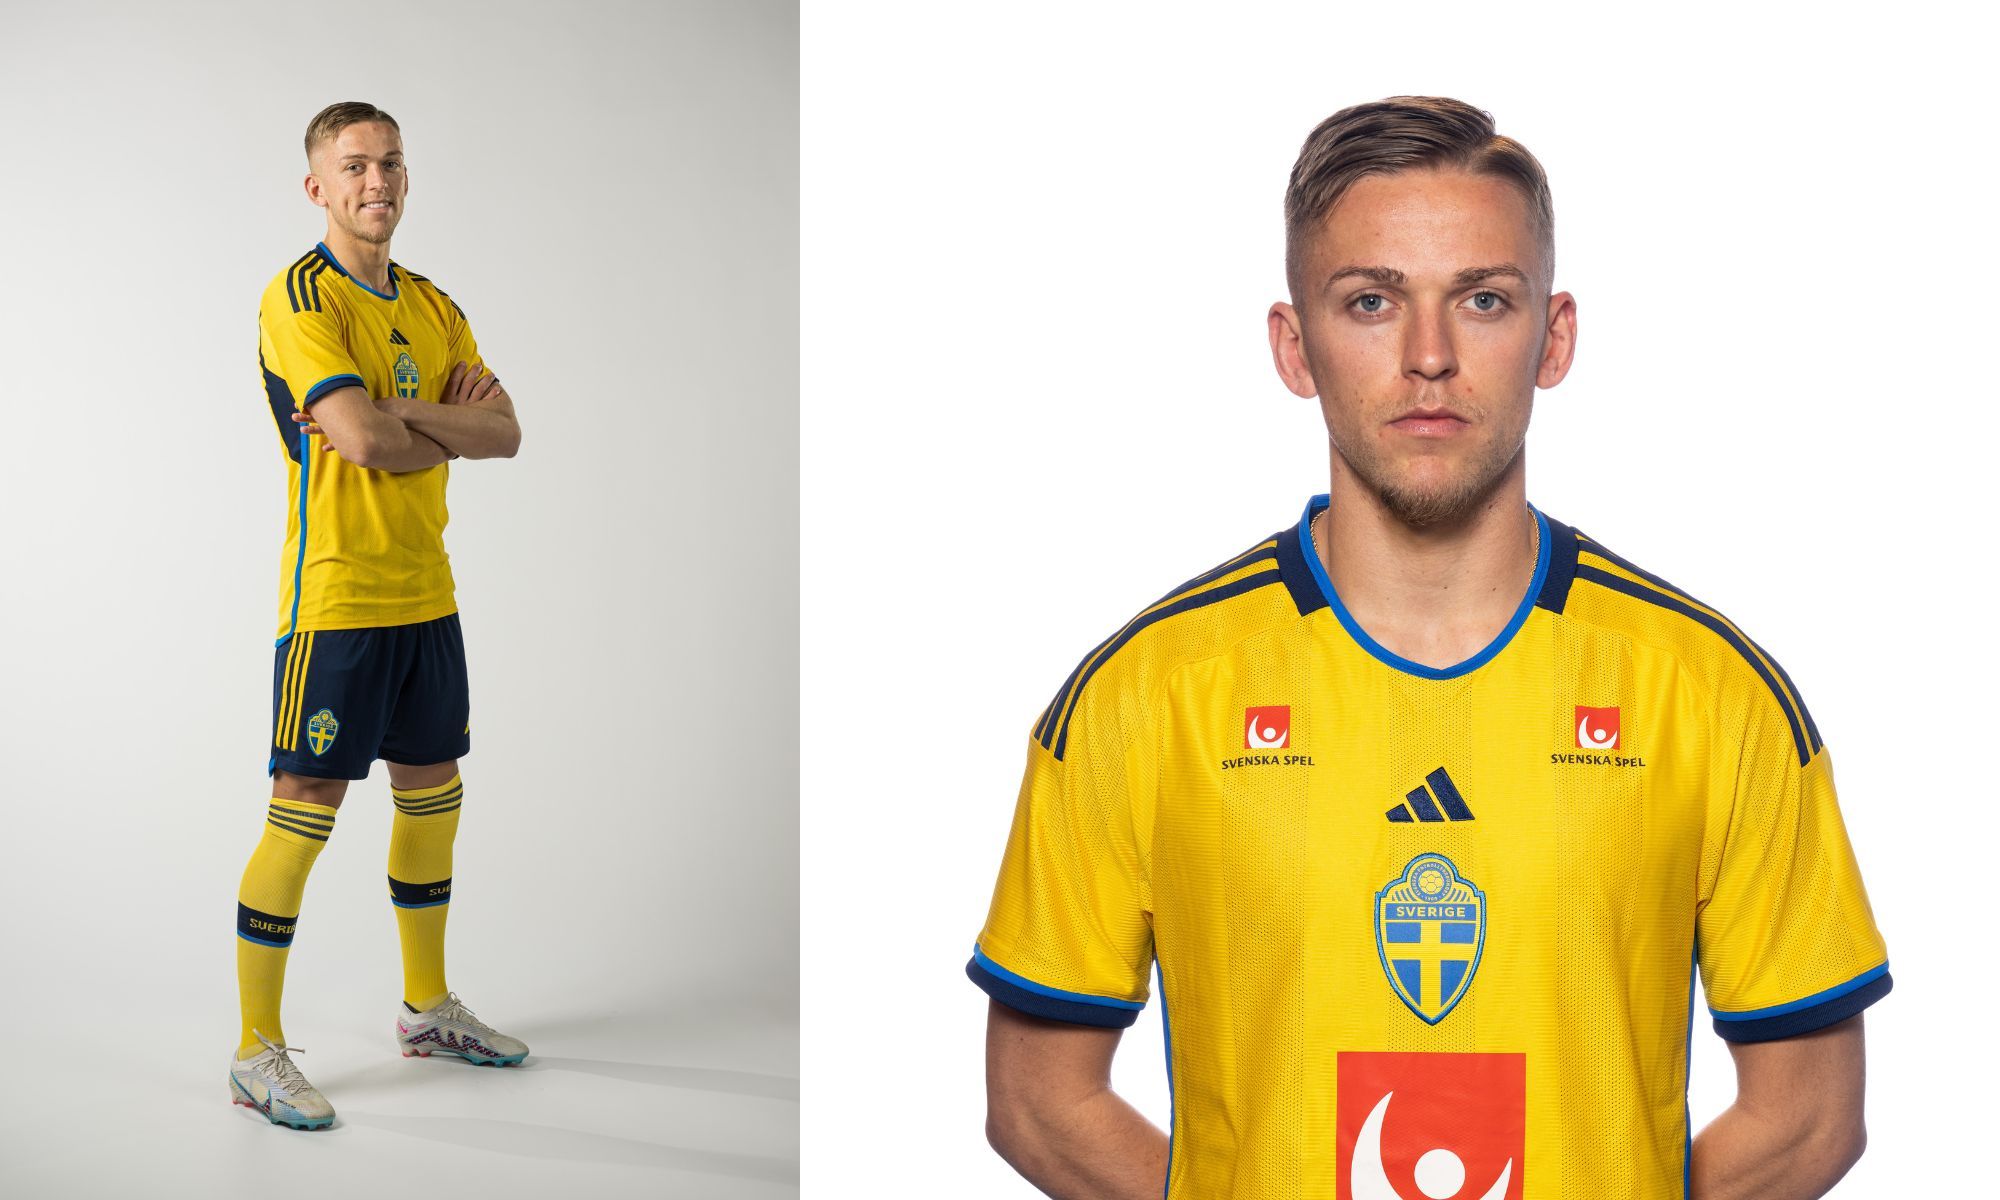 Jesper Karlsson i gul landslagströja fotboll. Helbild och porträttbild bredvid varandra.